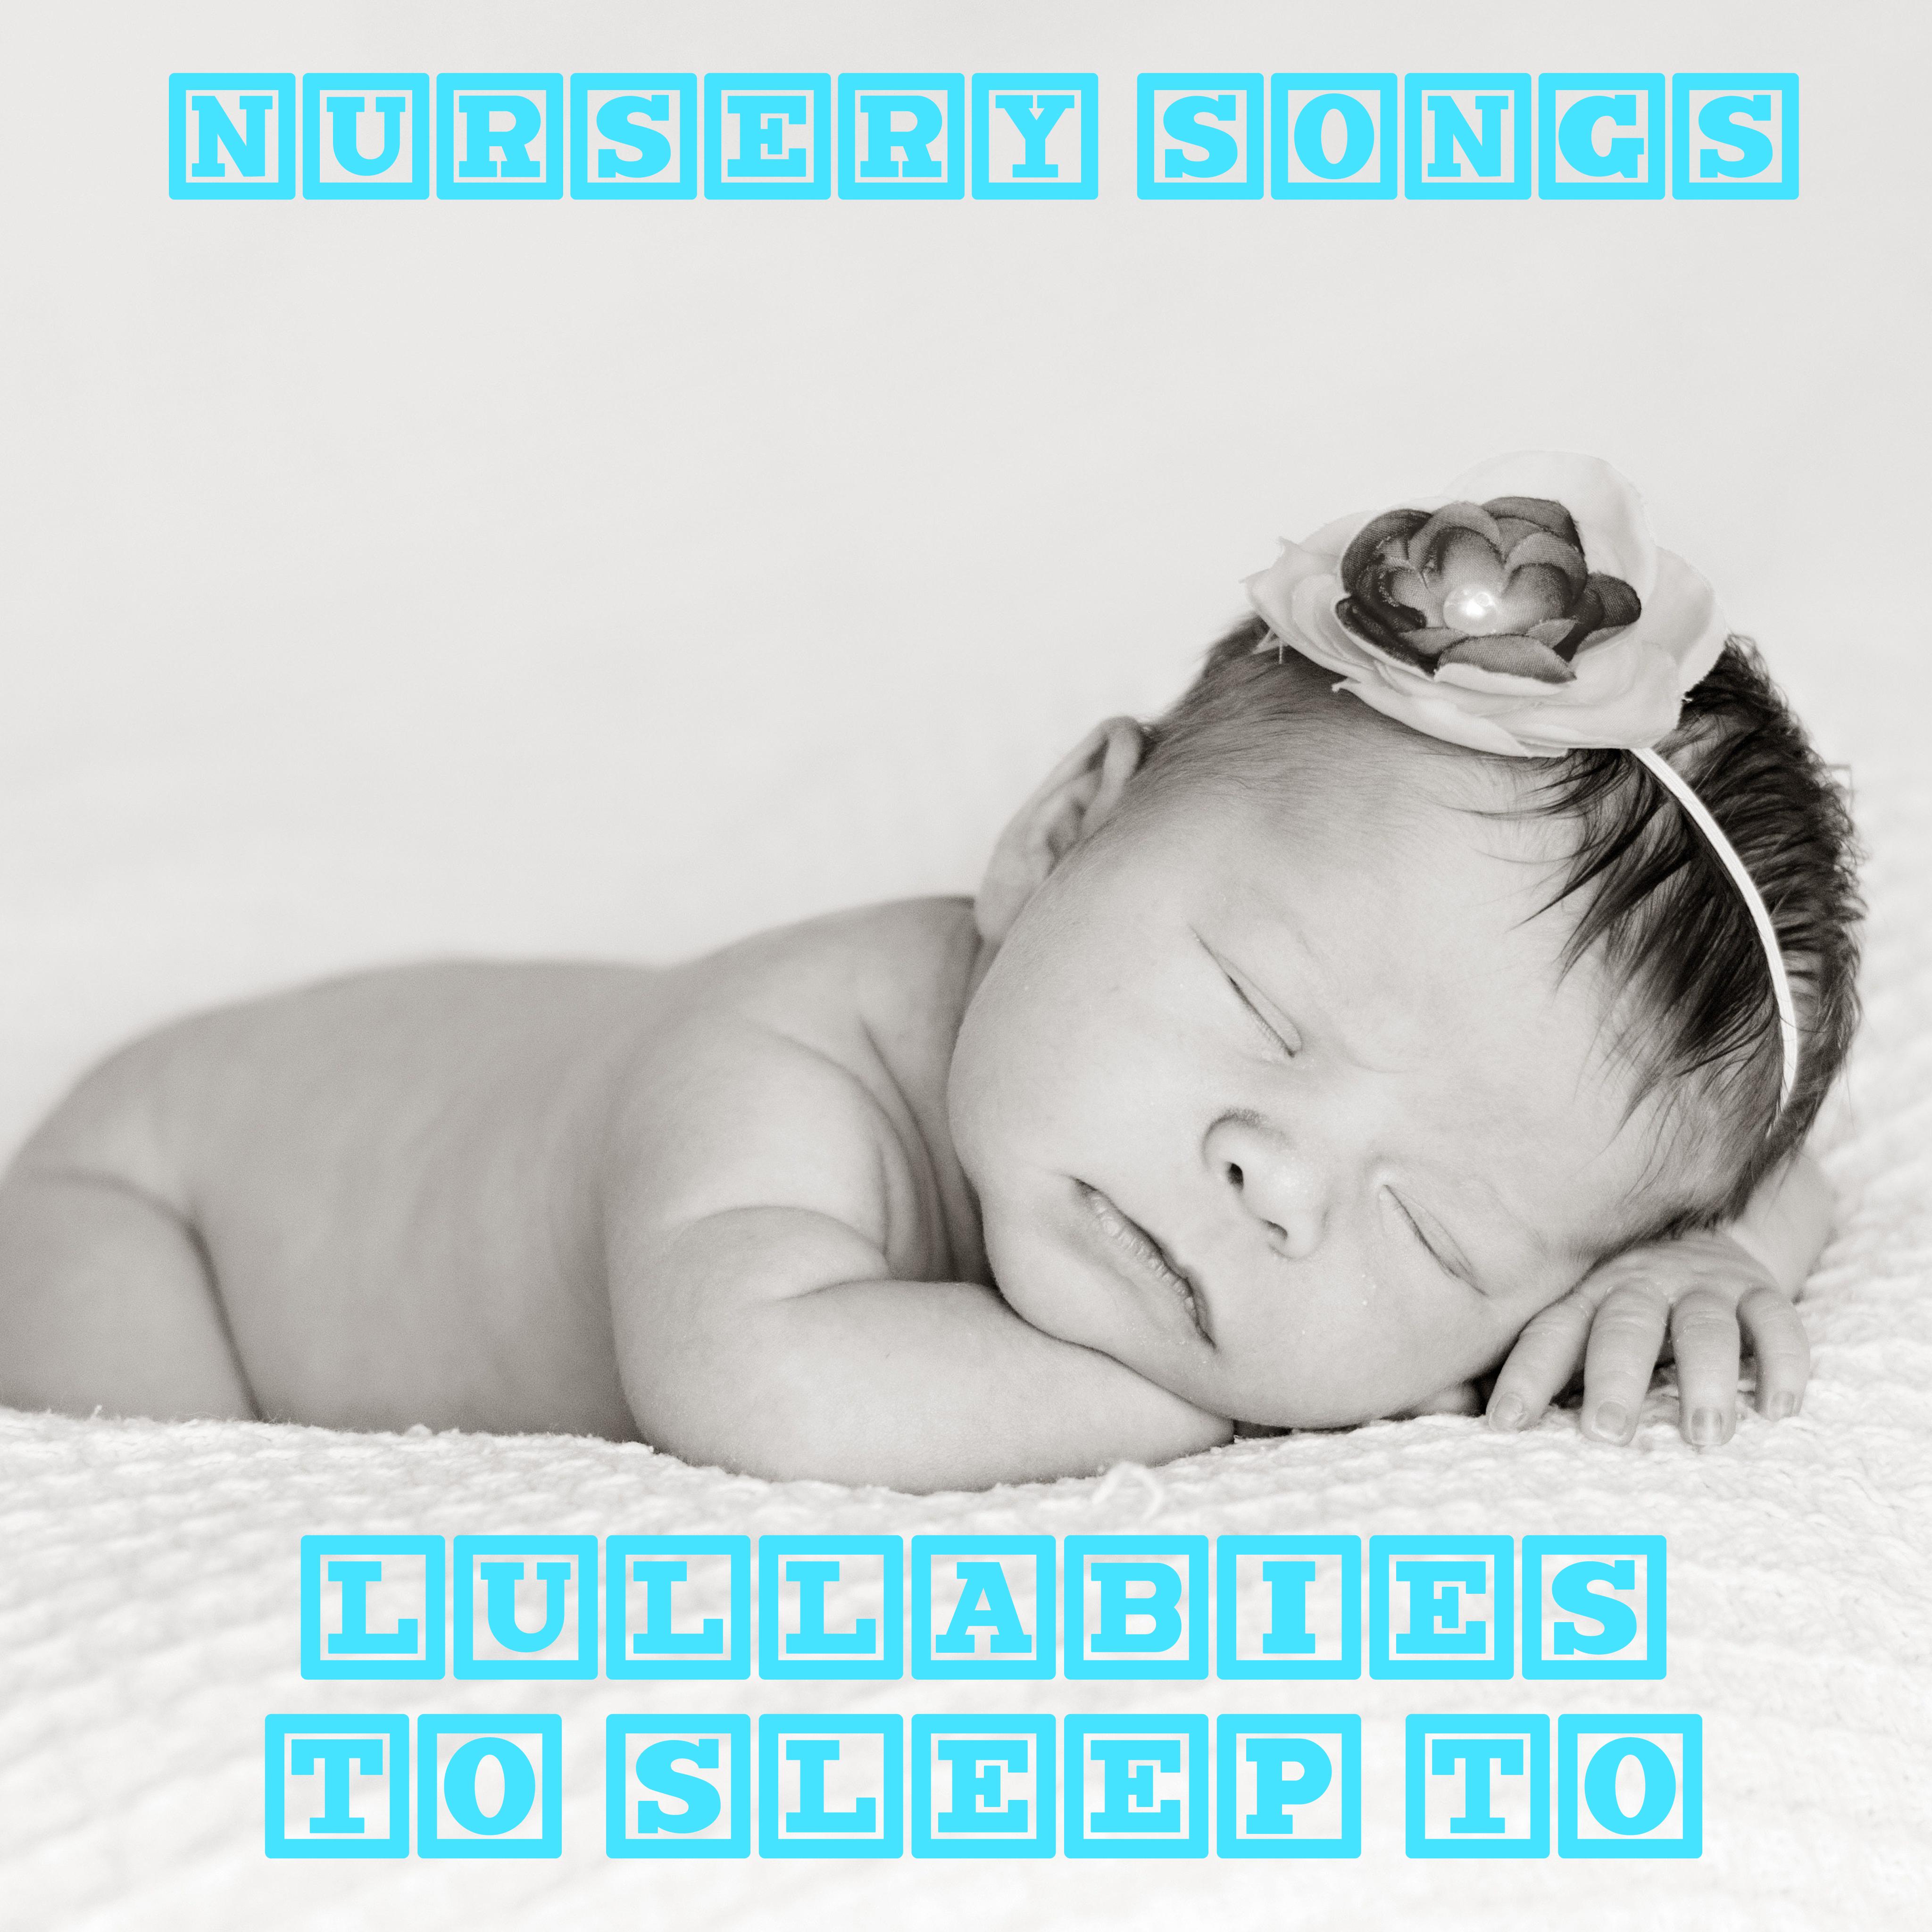 13 Nursery Songs: Lullabies to Sleep to